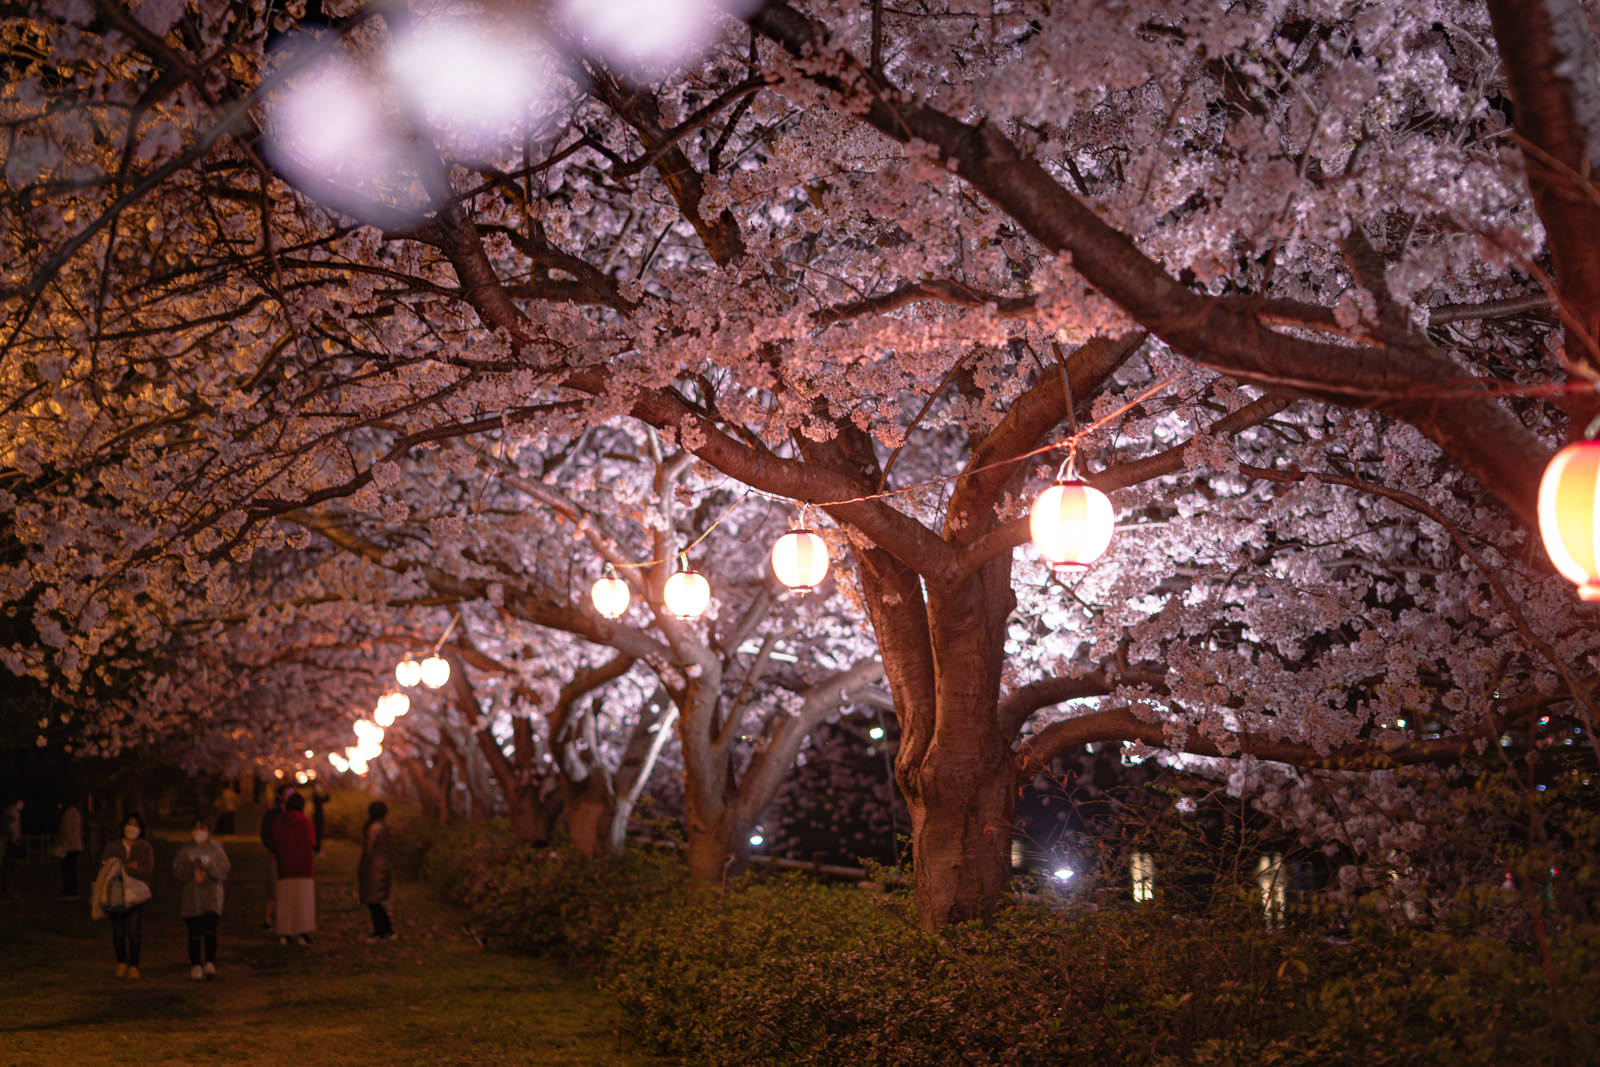 「夜桜の提灯のあかり | フリー素材のぱくたそ」の写真